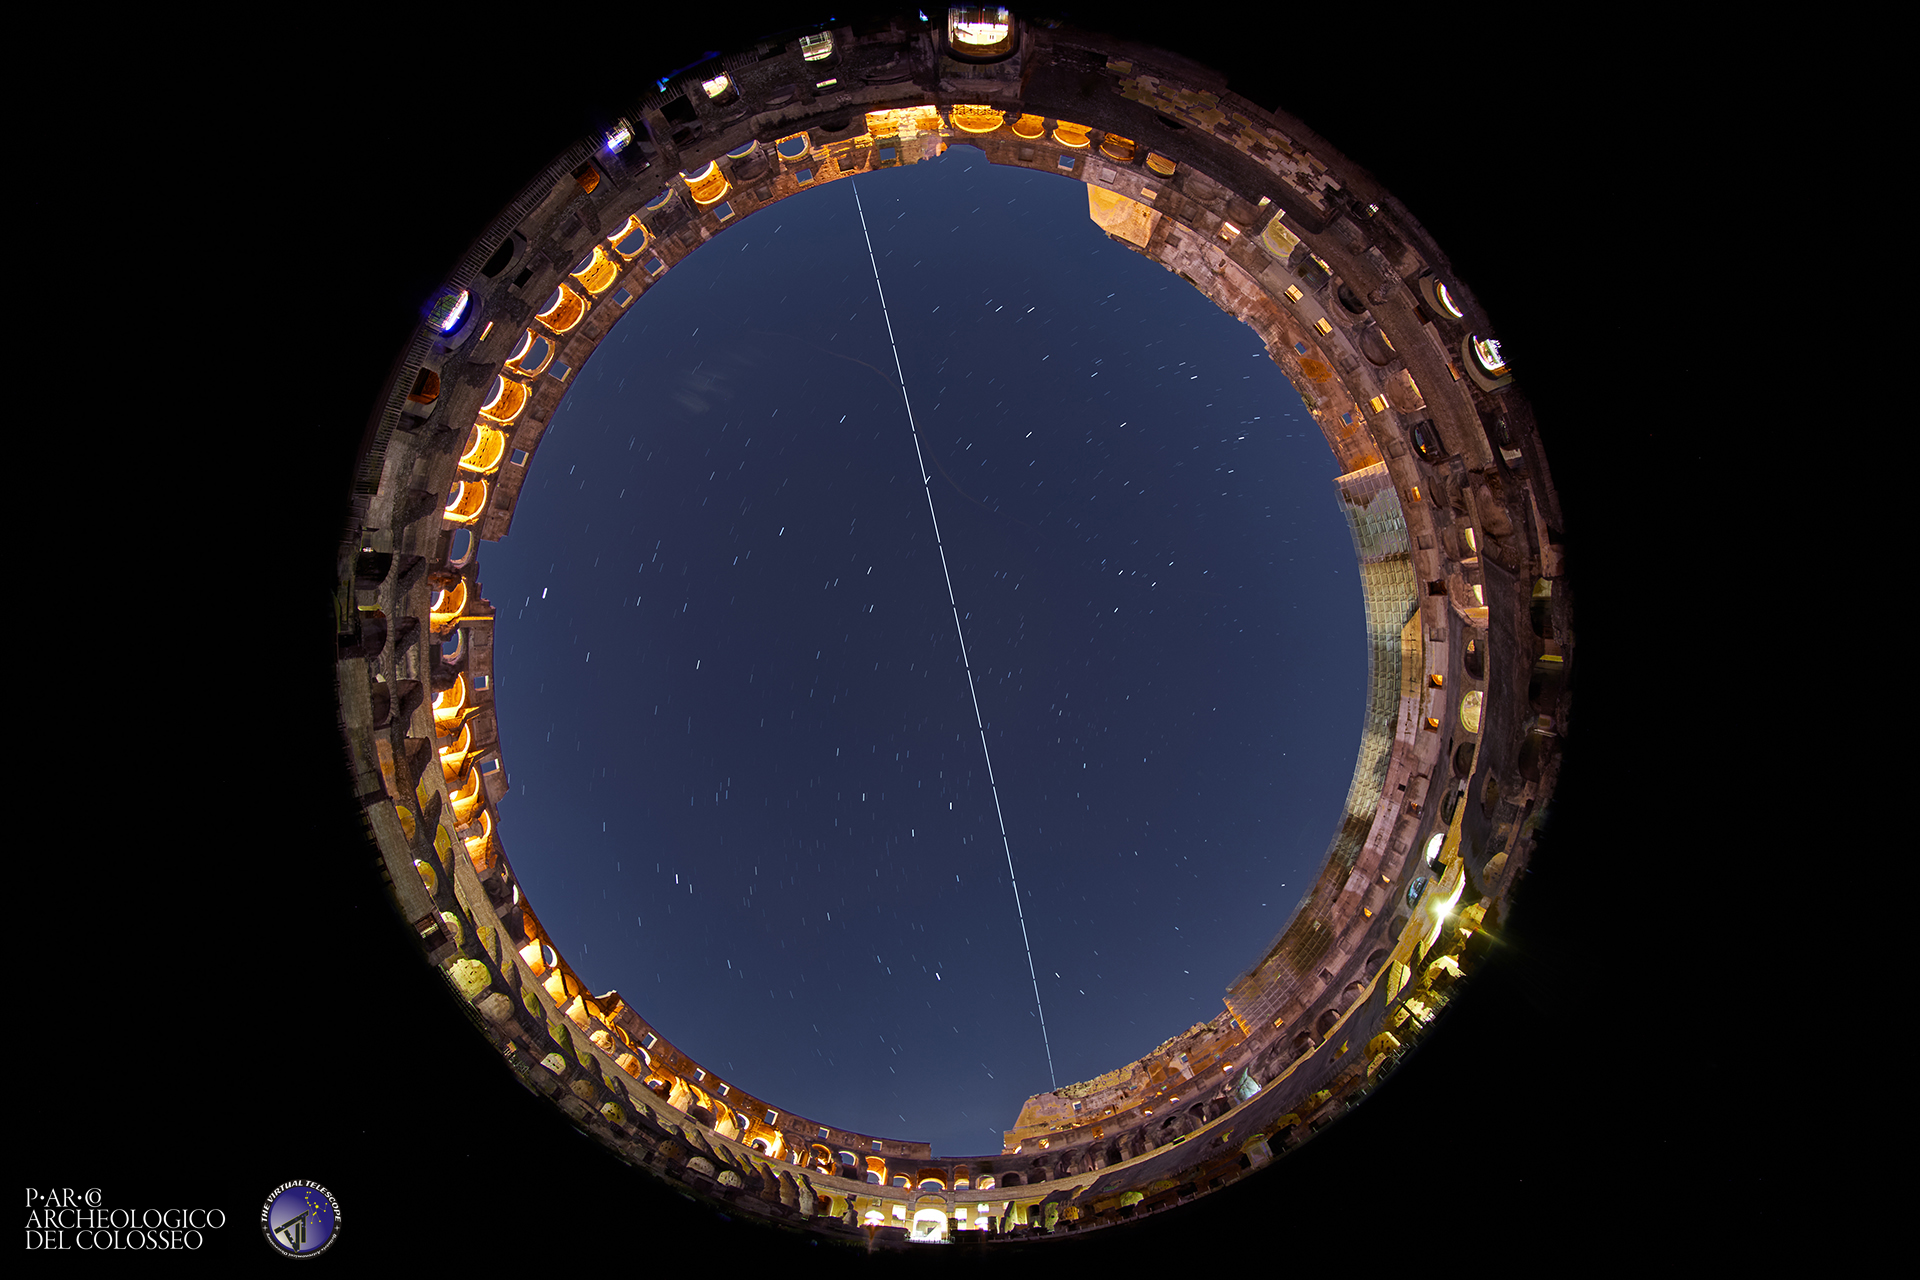 La Stazione Spaziale Internazionale vola sul Colosseo. 6 dicembre 2021.